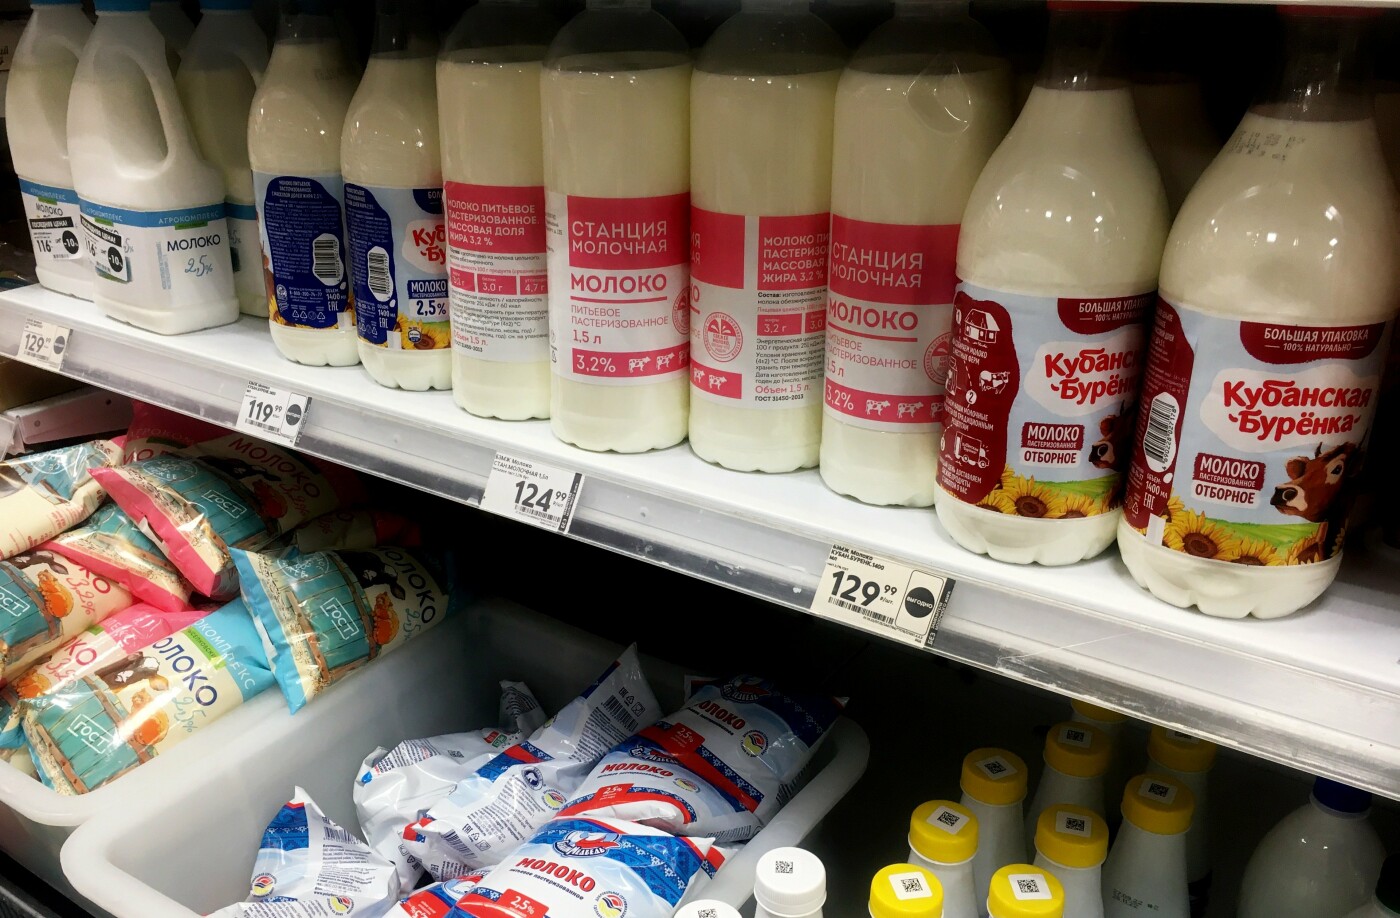 Молоко и цены на него в магазинах в начале ноября 2022 года